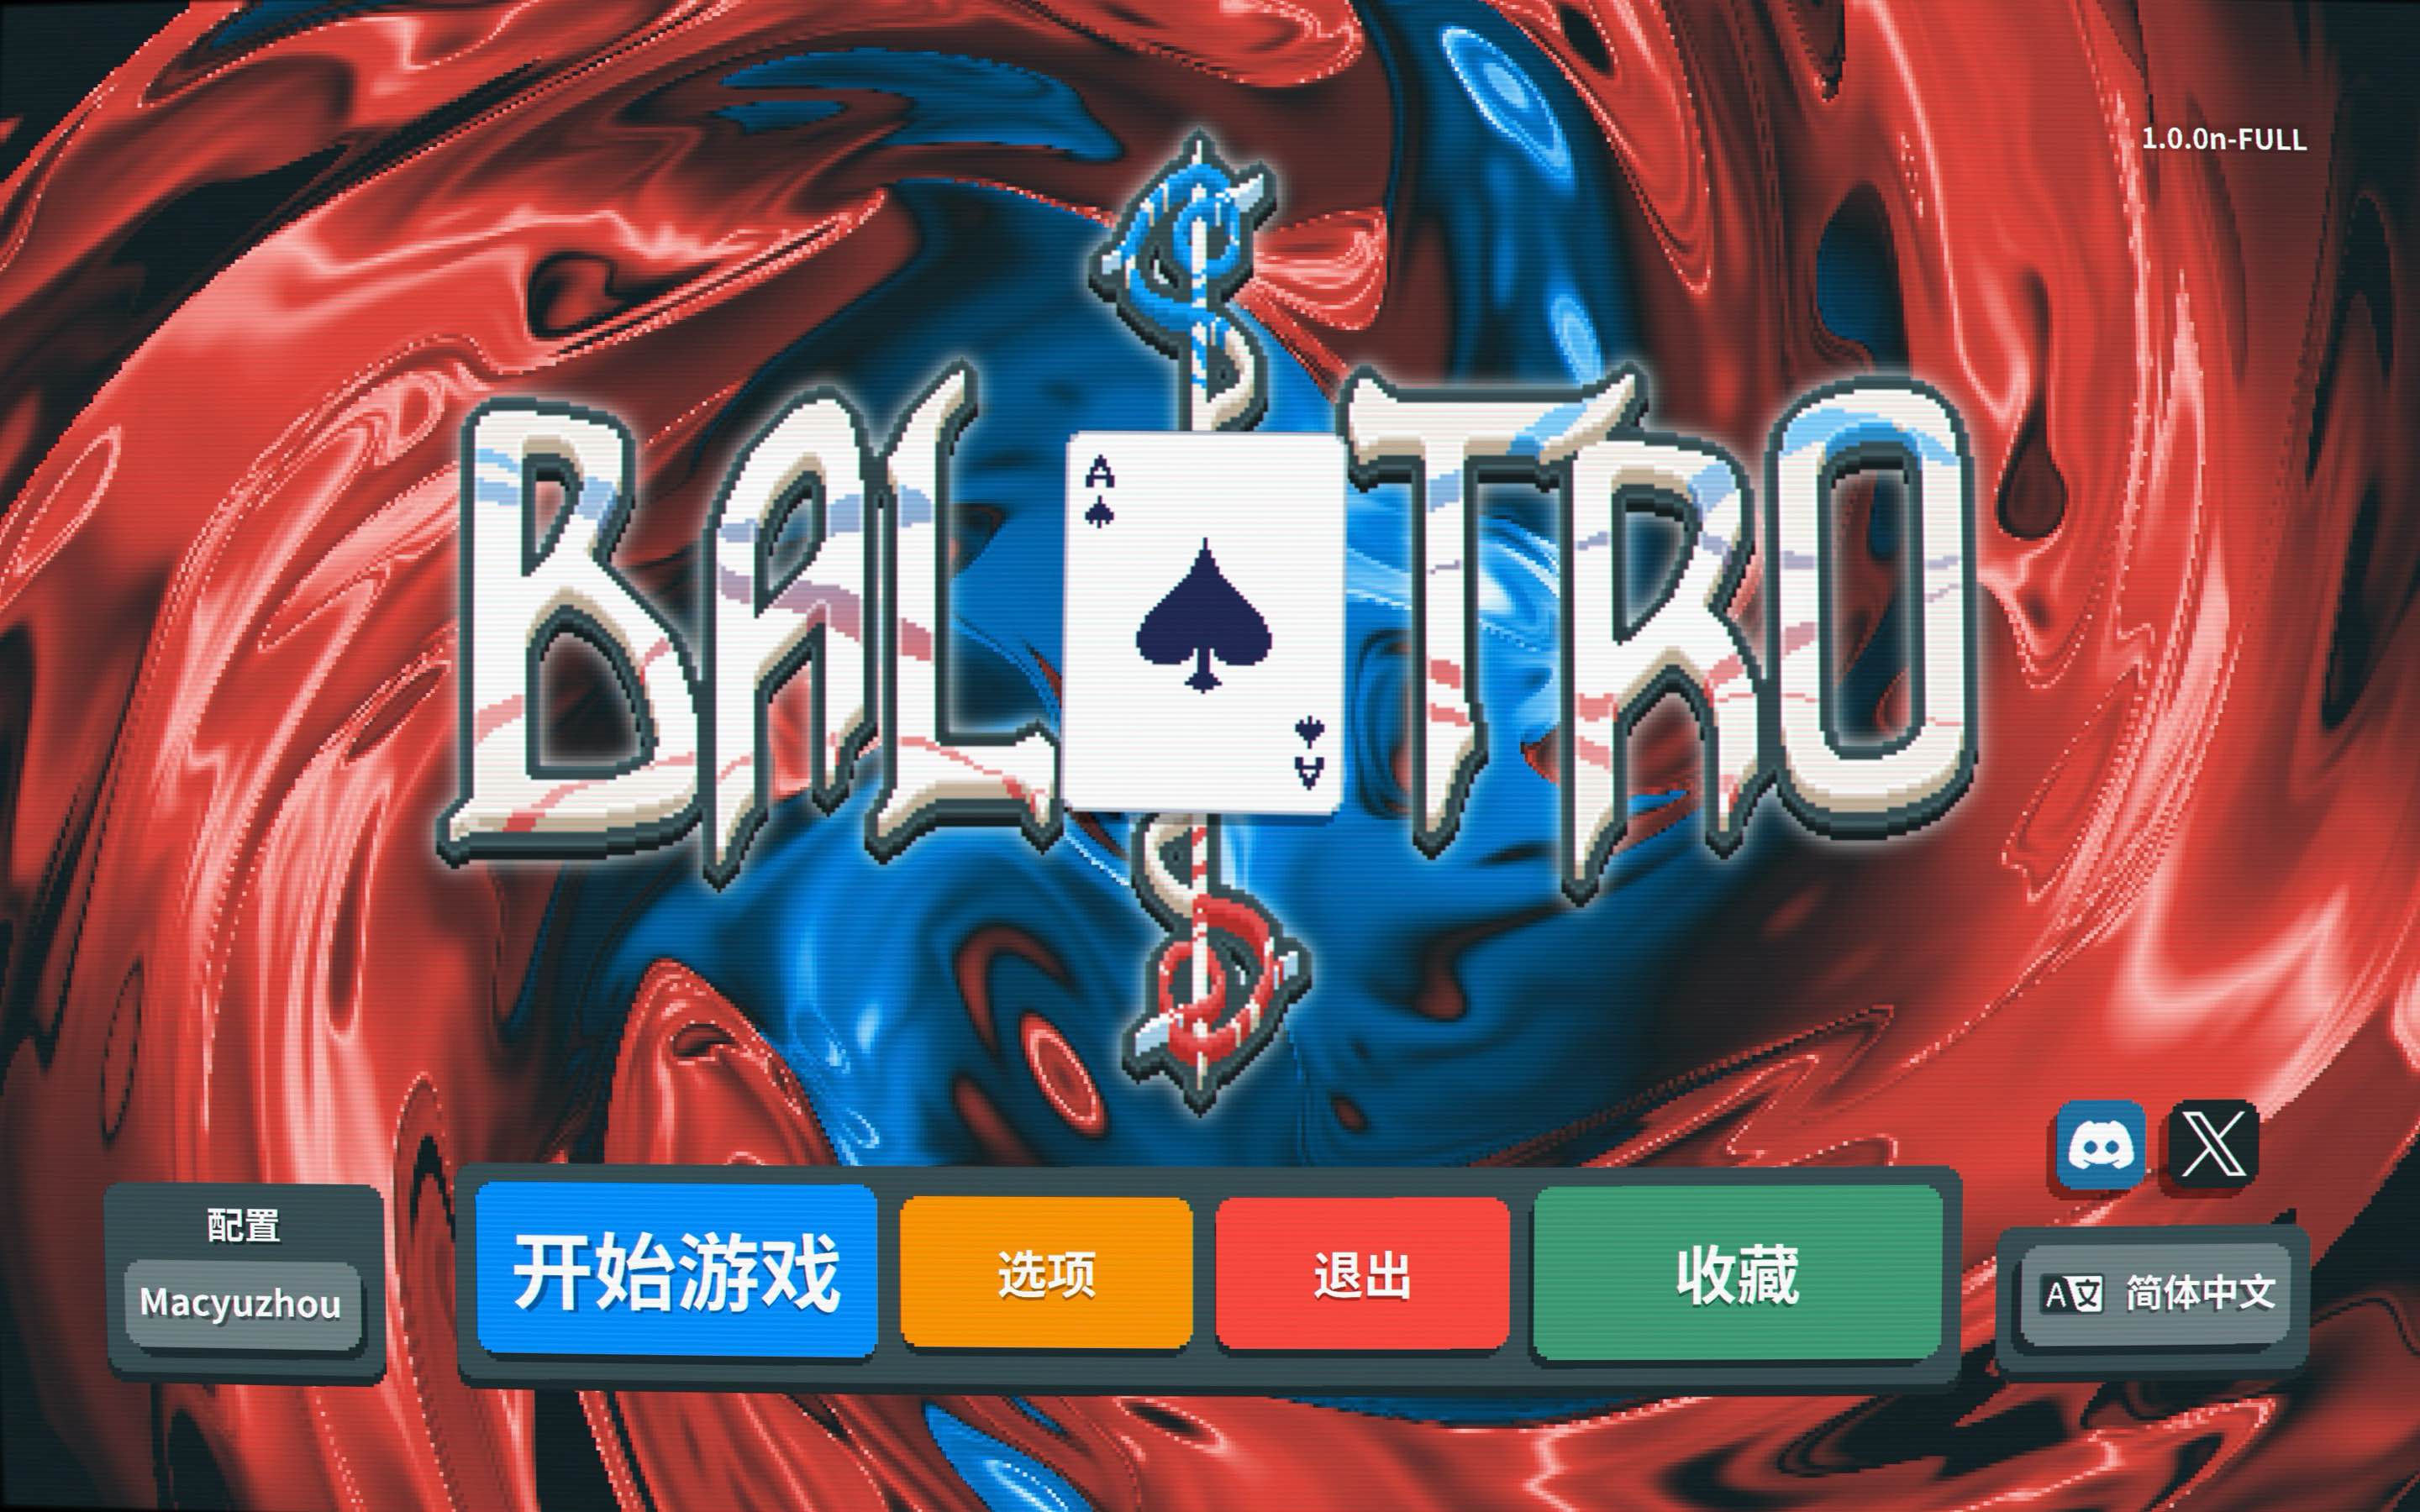 小丑牌 for Mac Balatro v1.0.1f 中文原生版 苹果电脑